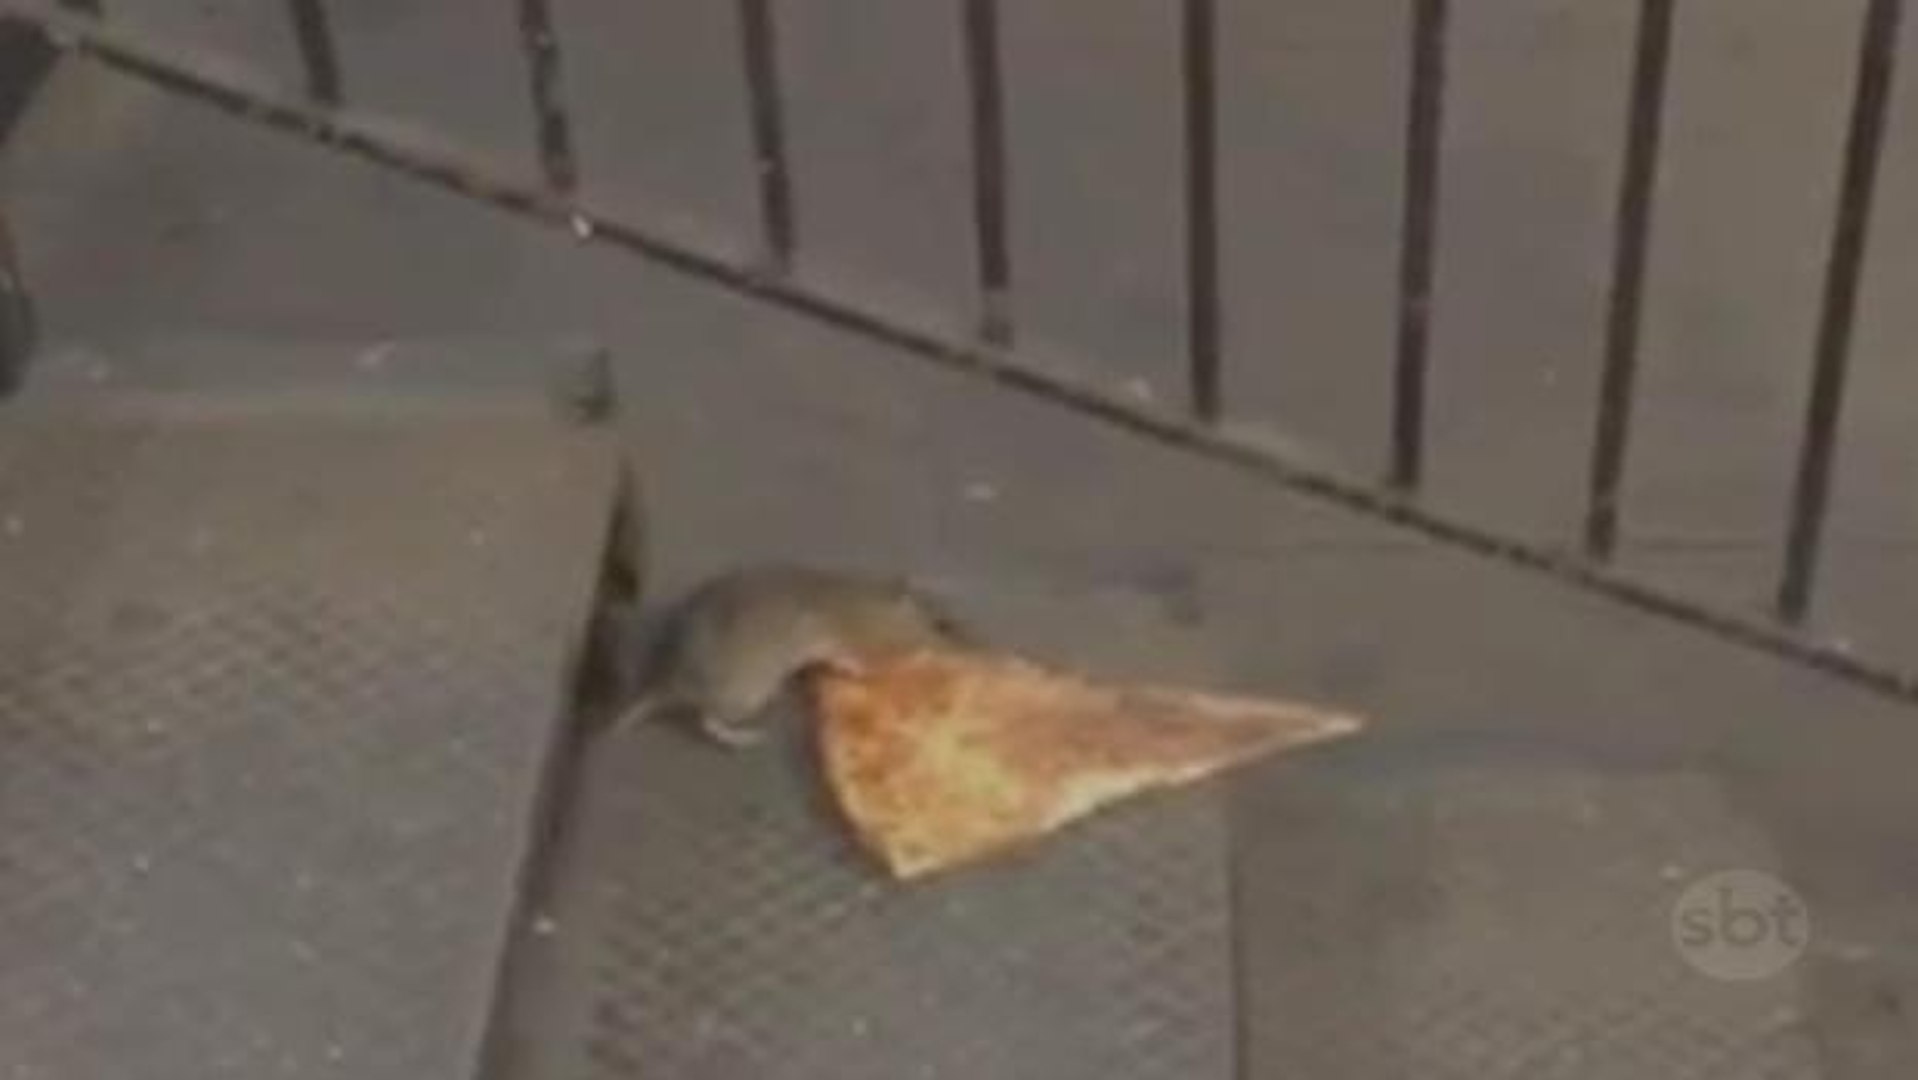 Relembramos um meme chocante: o rato carregando uma pizza em NY - Fotos -  R7 Hora 7